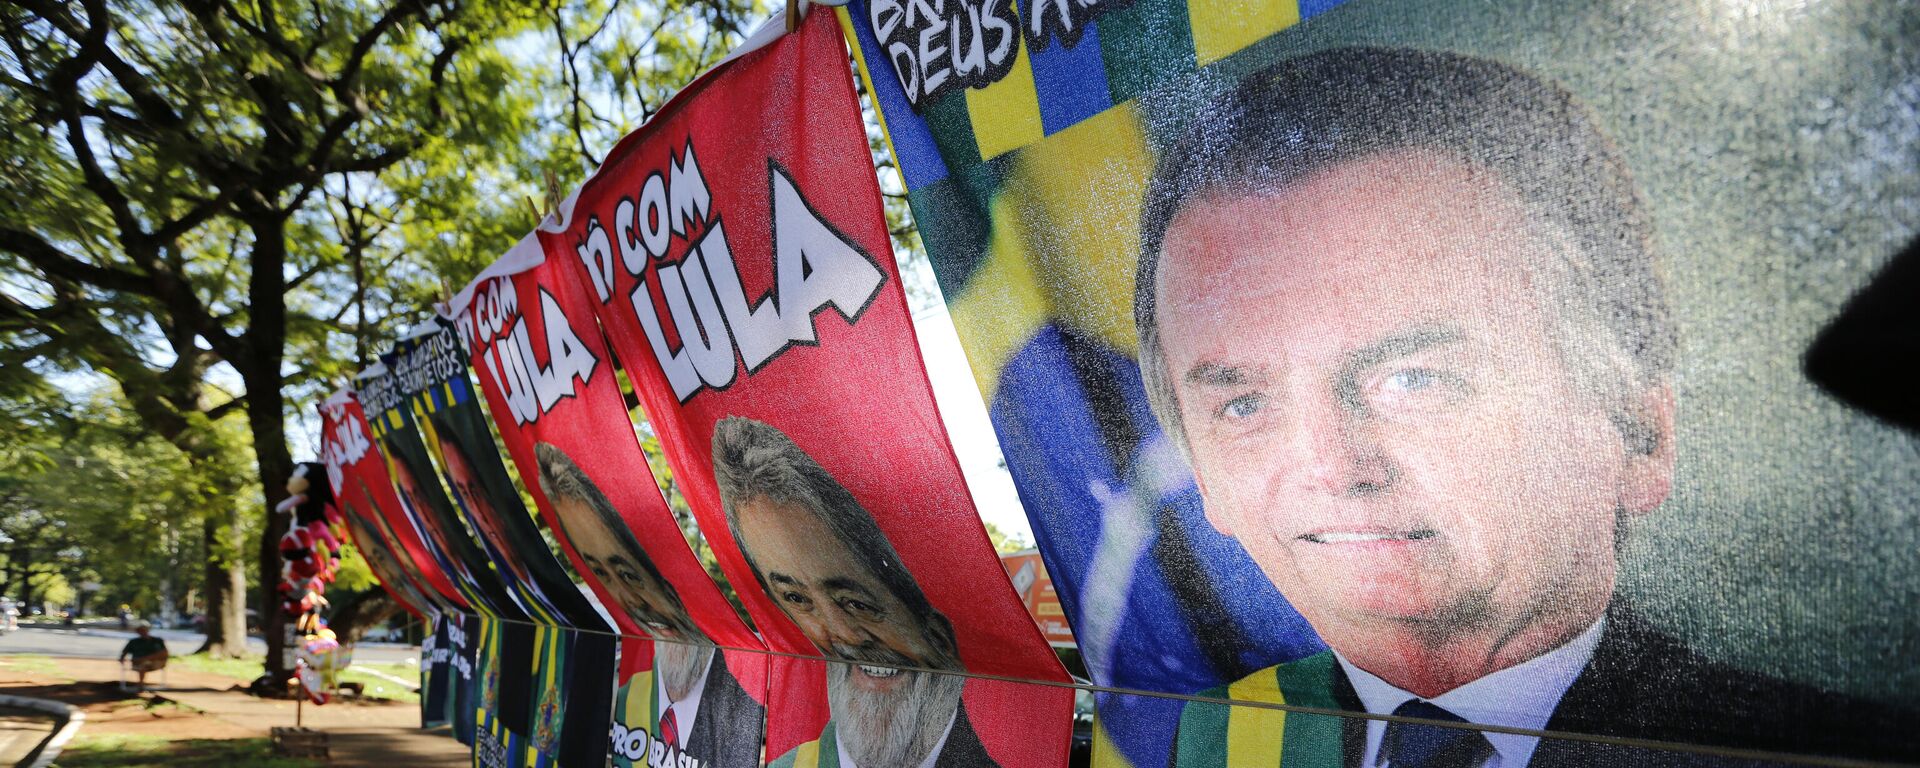 Toalhas com fotos do presidente Jair Bolsonaro (PL) e do ex-presidente Luiz Inácio Lula da Silva (PT) à venda, em Foz do Iguaçu (PR), em 11 de fevereiro de 2022 (foto de arquivo) - Sputnik Brasil, 1920, 11.10.2022